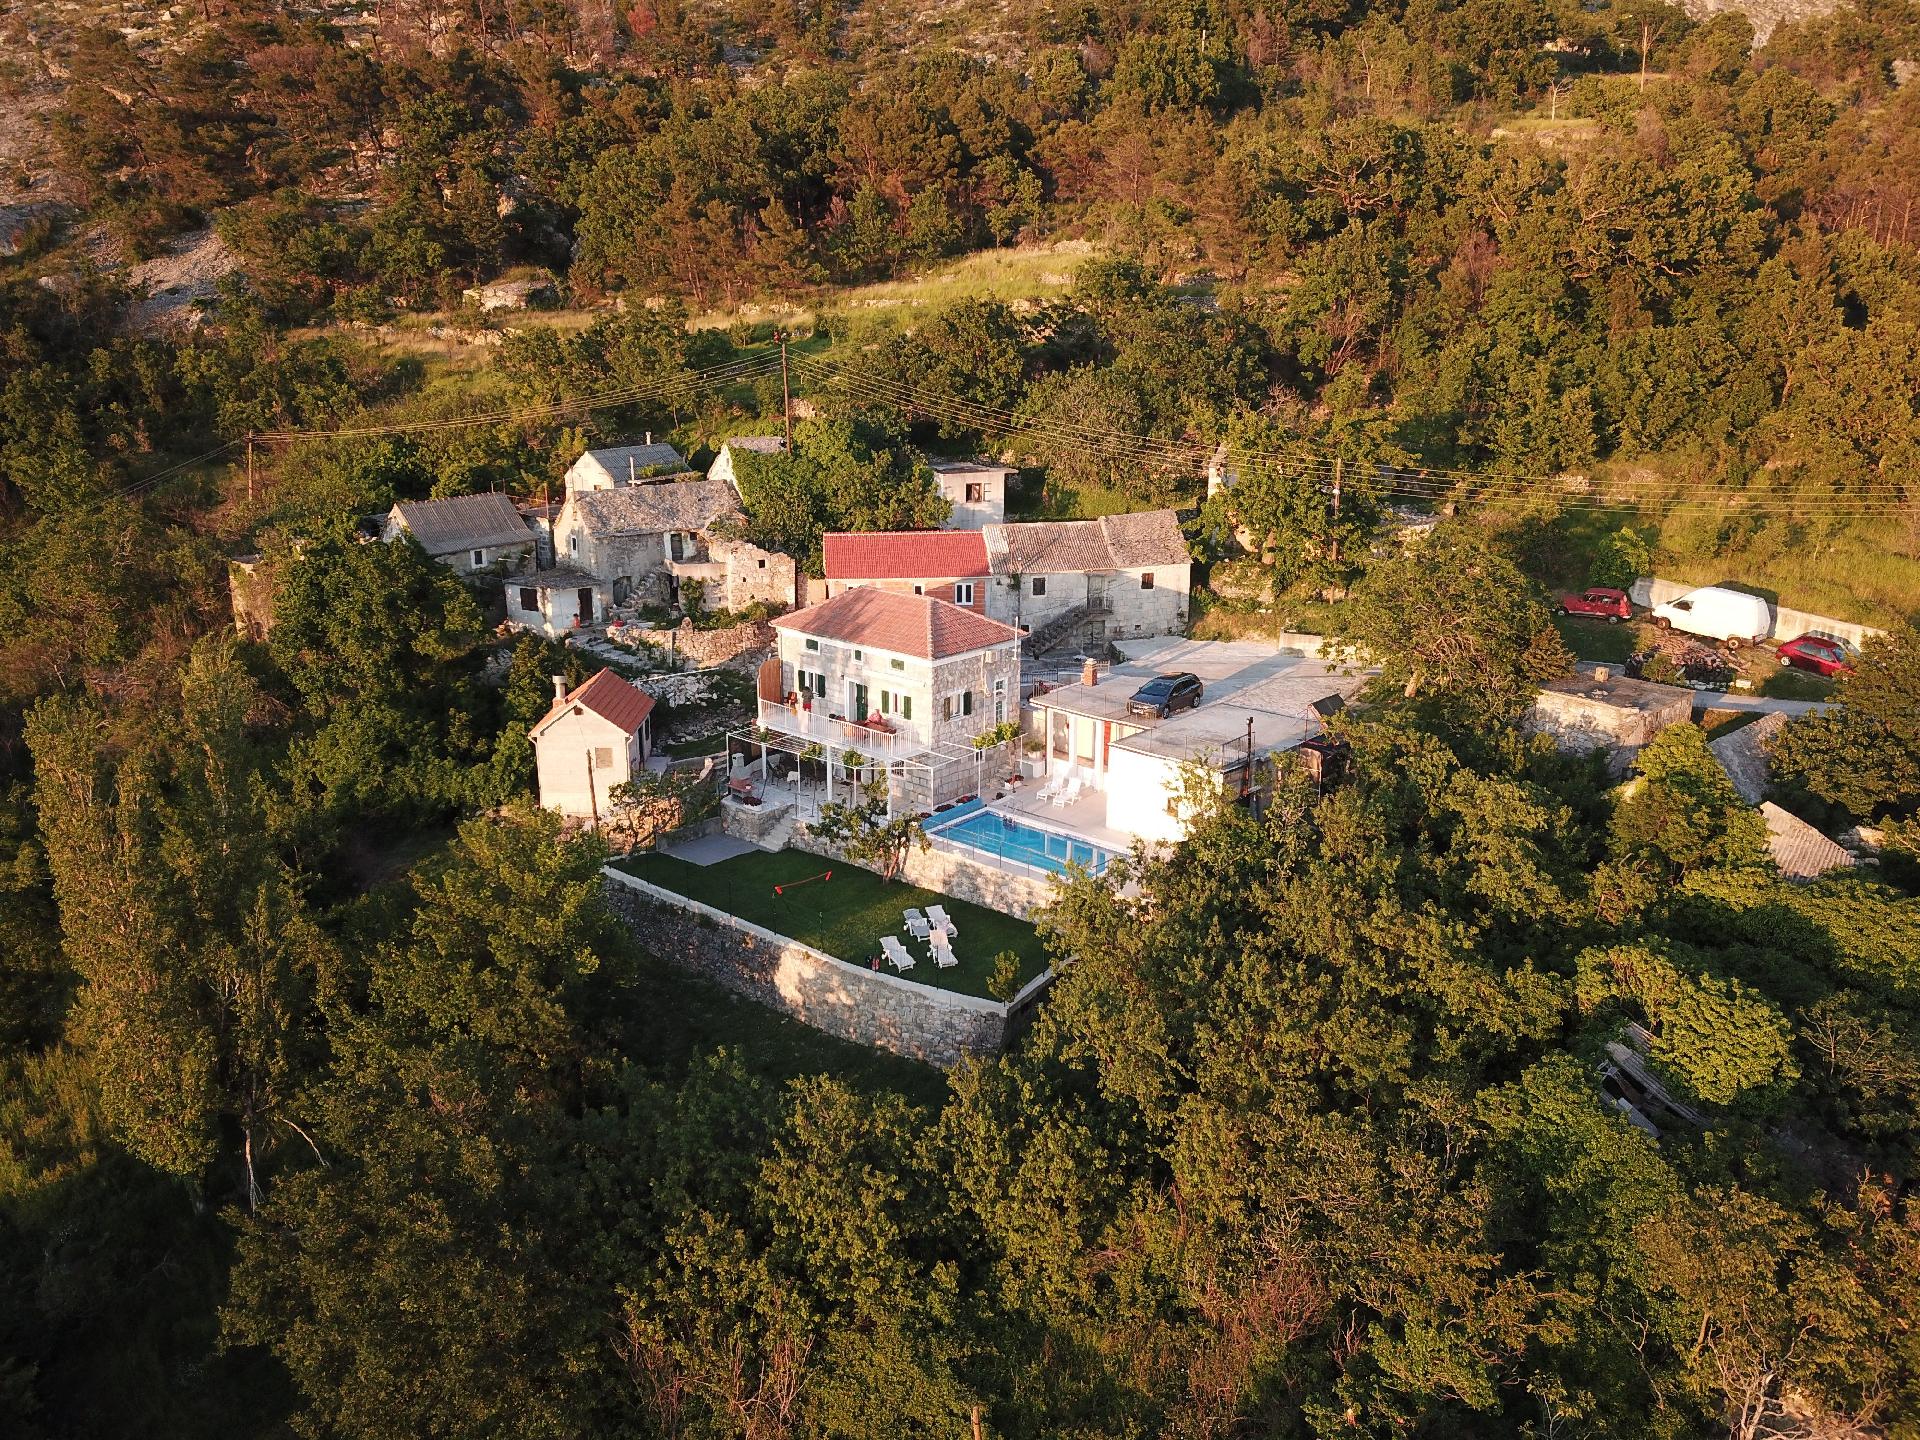 Ferienhaus mit Veranda in einer schönen Hangl Ferienhaus in Dalmatien